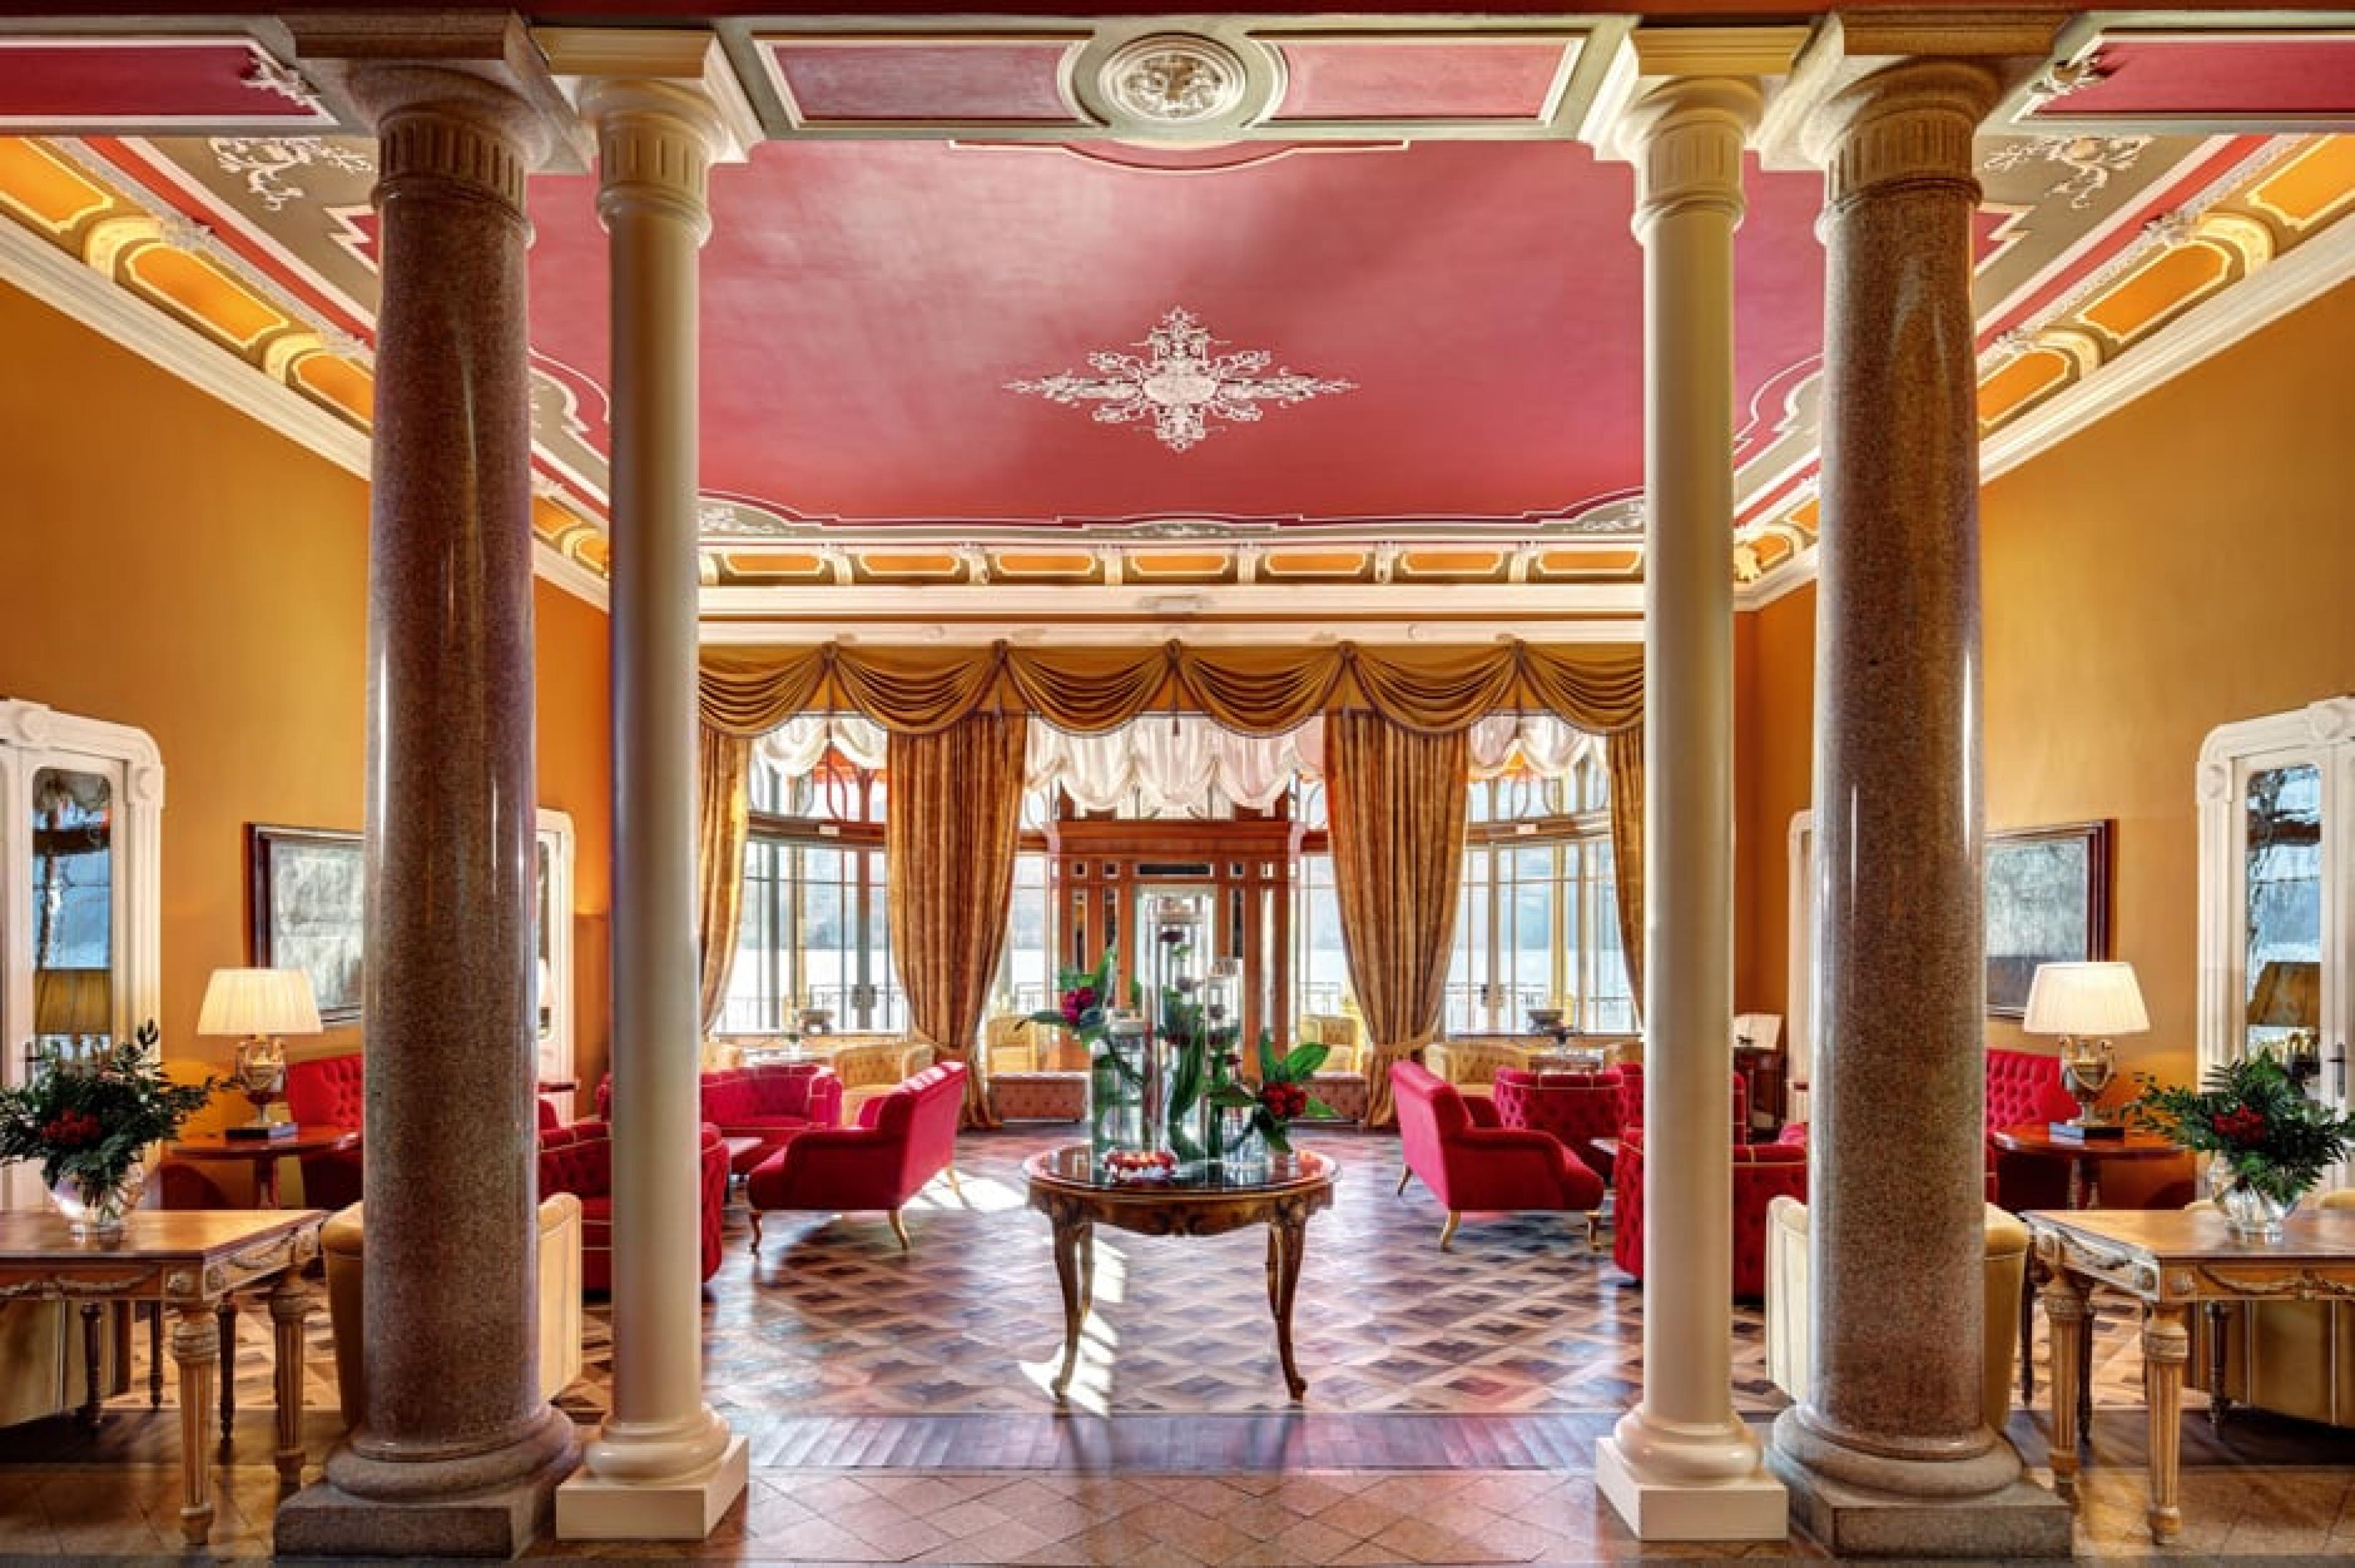 Lobby at Grand Hotel Tremezzo, Lake Como, Italy